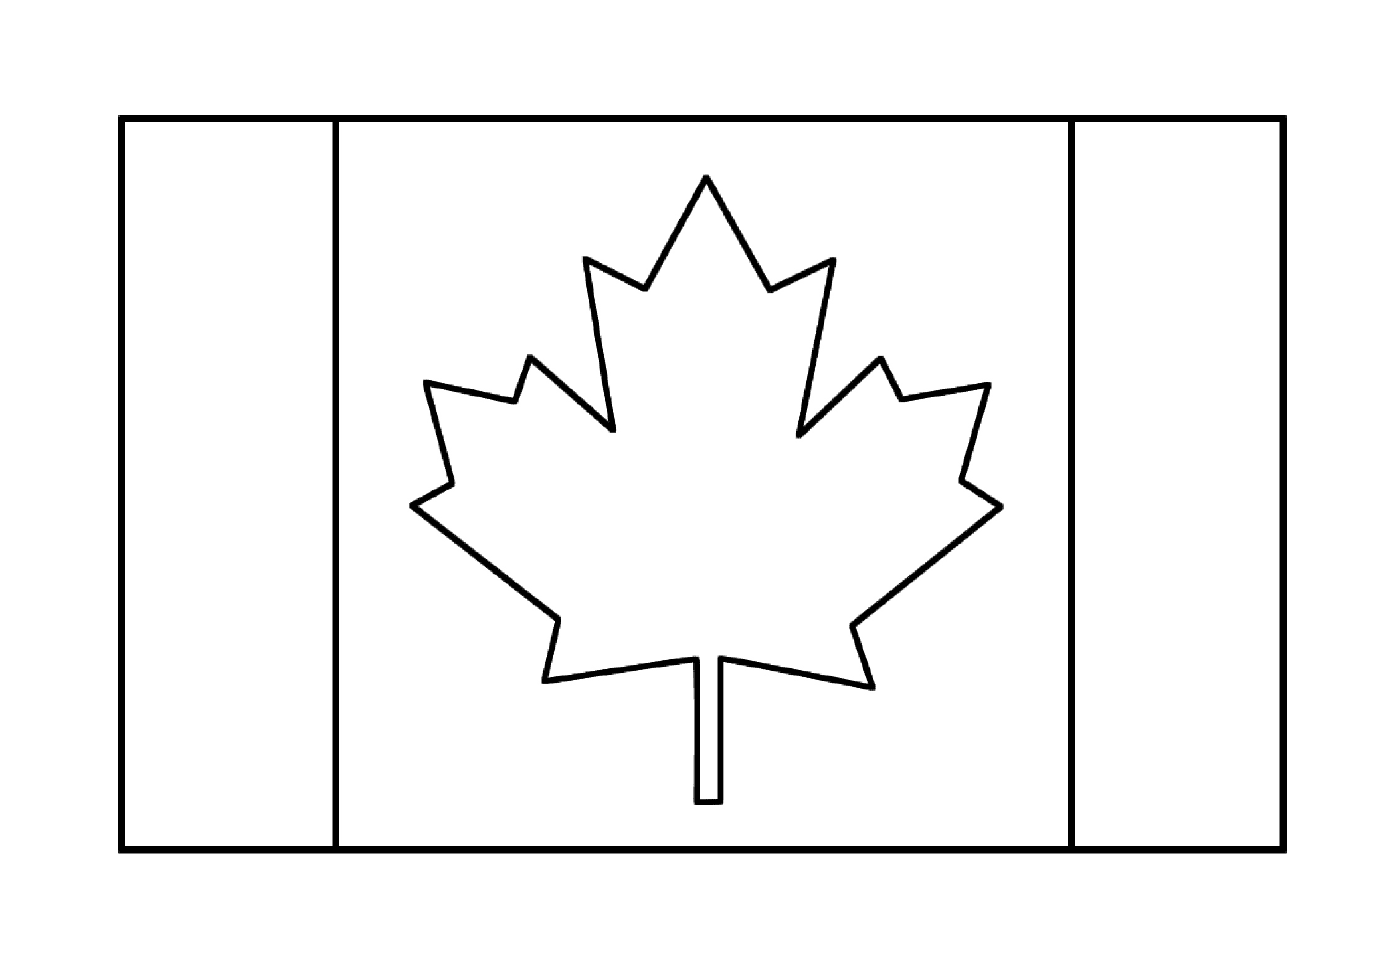  कनाडाई फ्लैग 